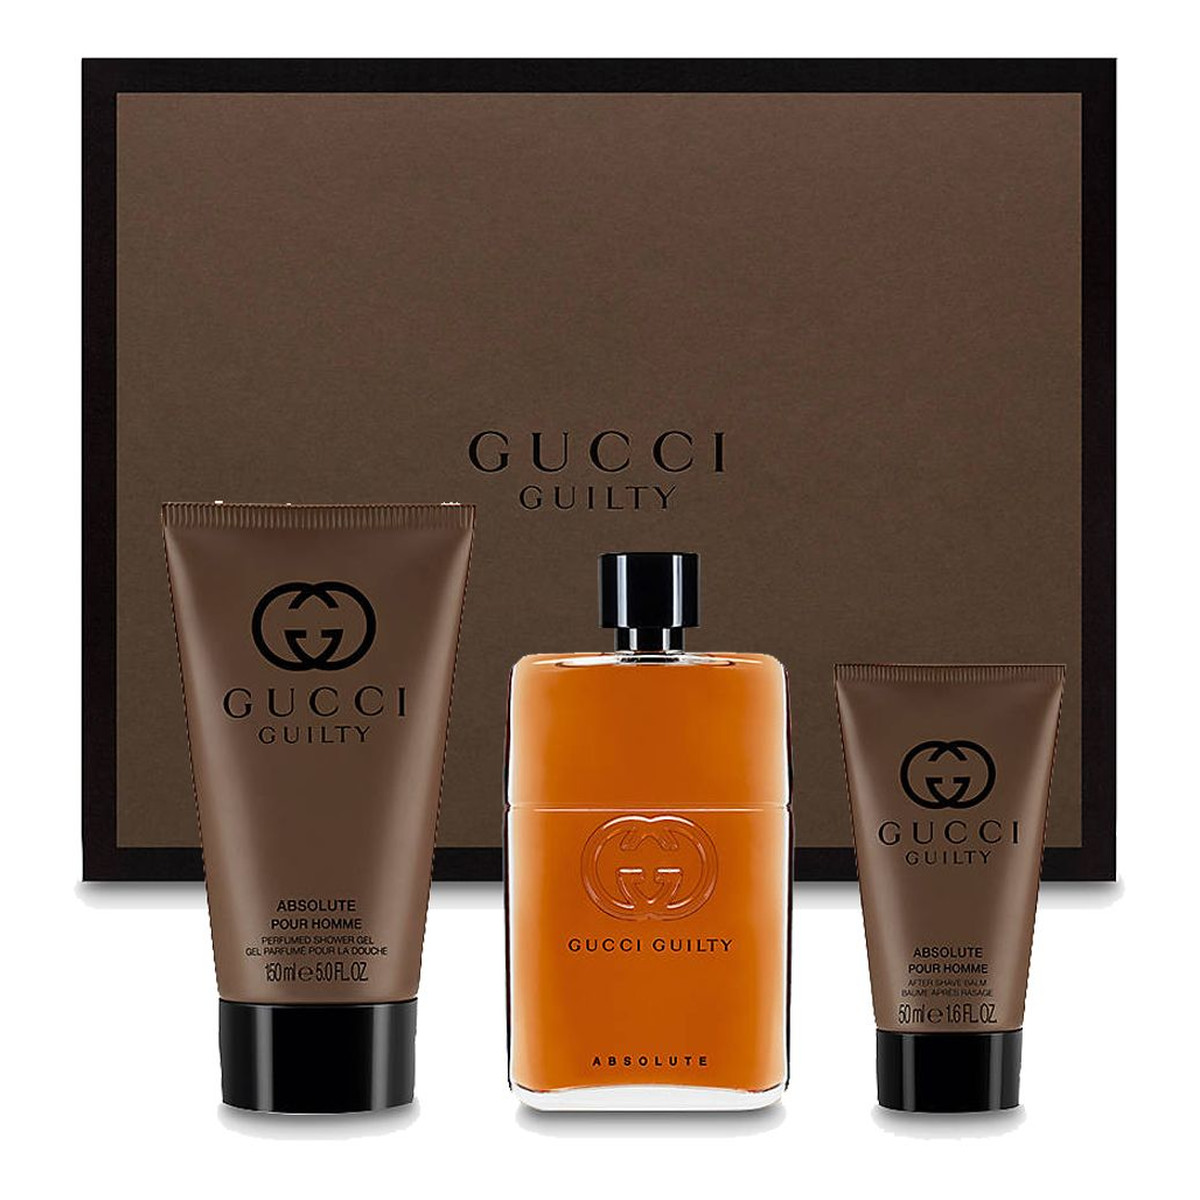 Gucci Guilty Absolute Pour Homme zestaw( woda perfumowana 90ml + balsam po goleniu 50ml + żel pod prysznic 150ml)